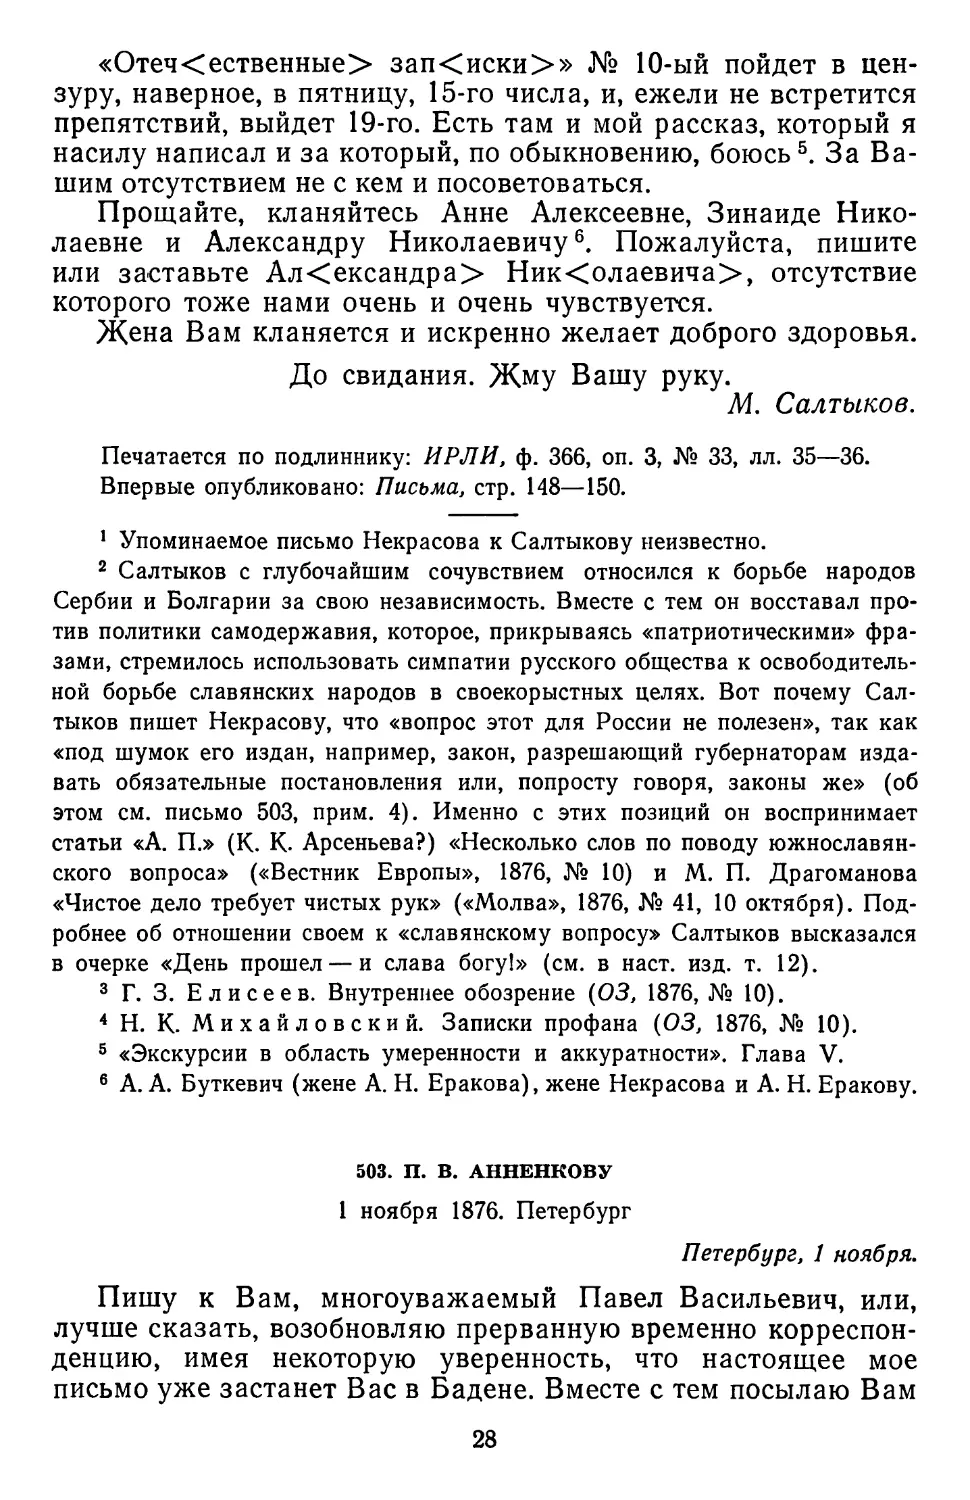 503.П. В. Анненкову. 1 ноября 1876. Петербург